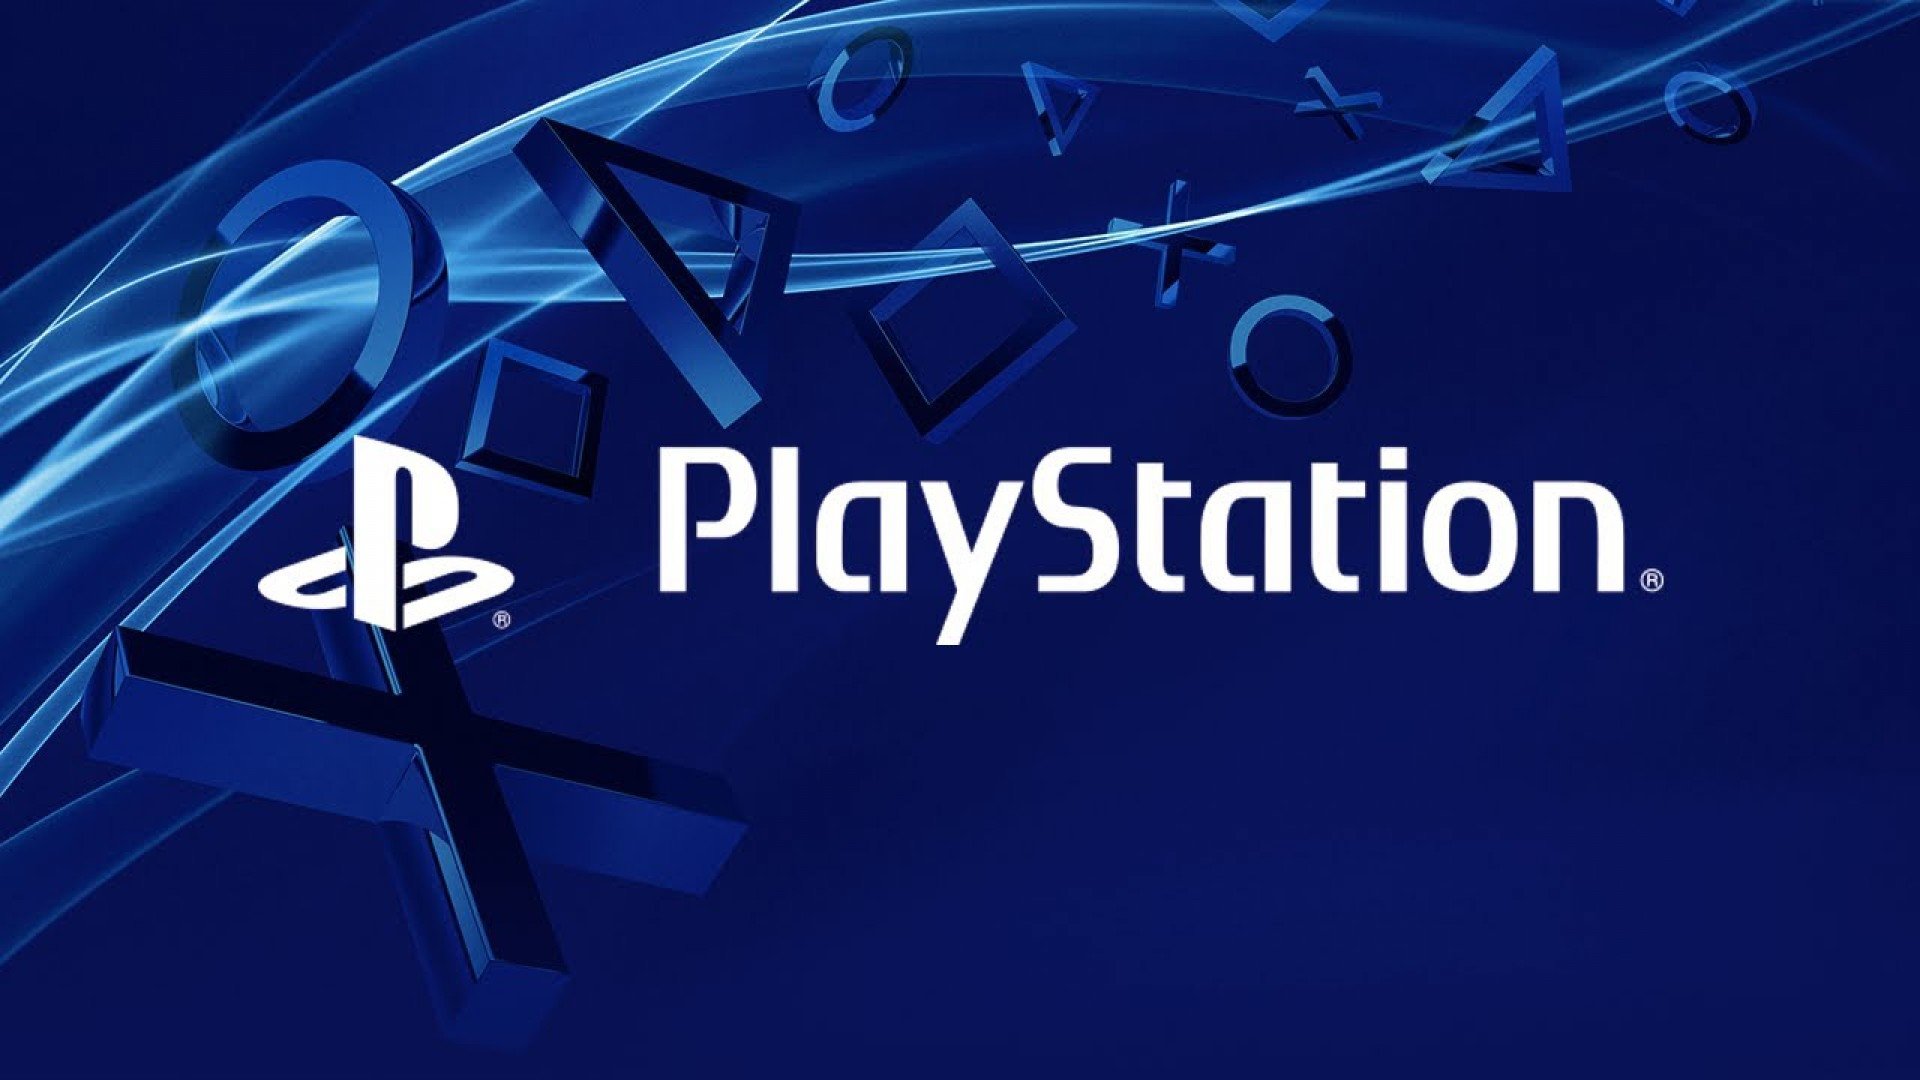 PlayStation 4 telah berhasil menjual lebih dari 1 miliar game, menurut Sony 1